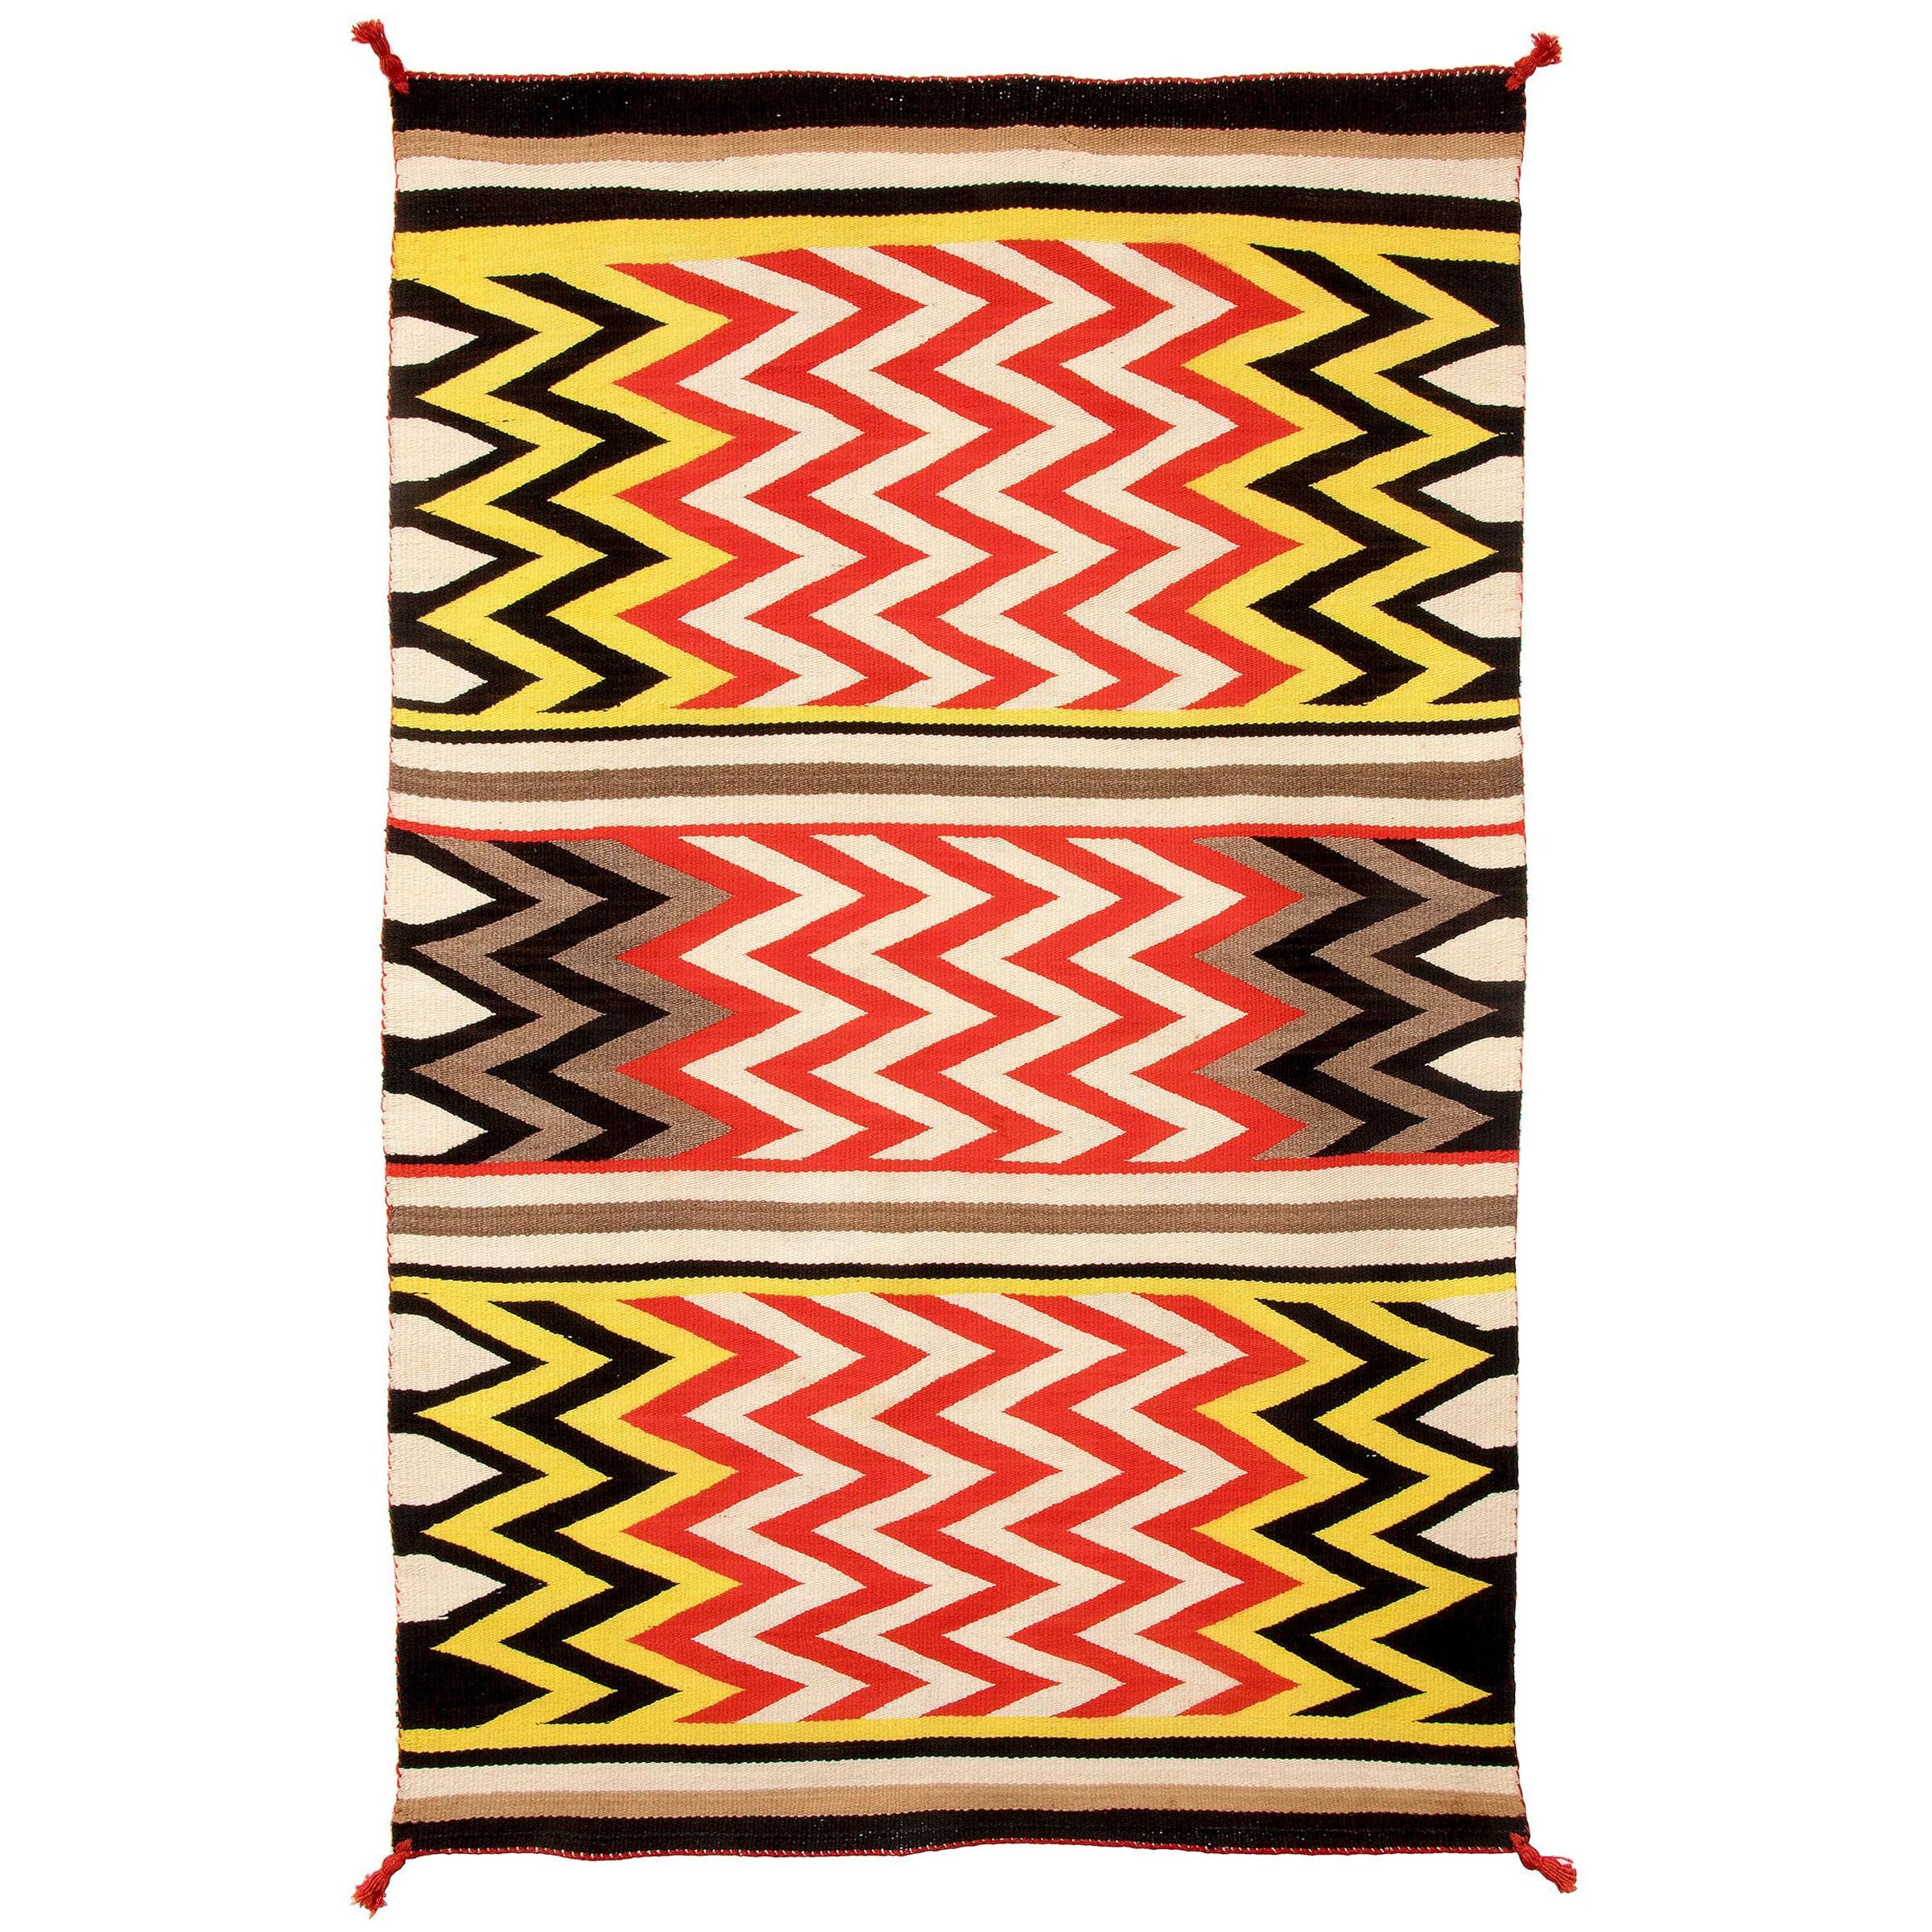 Vintage Navajo Rug, Lightning Pattern, circa 1935, Yellow, Red, Black, & White